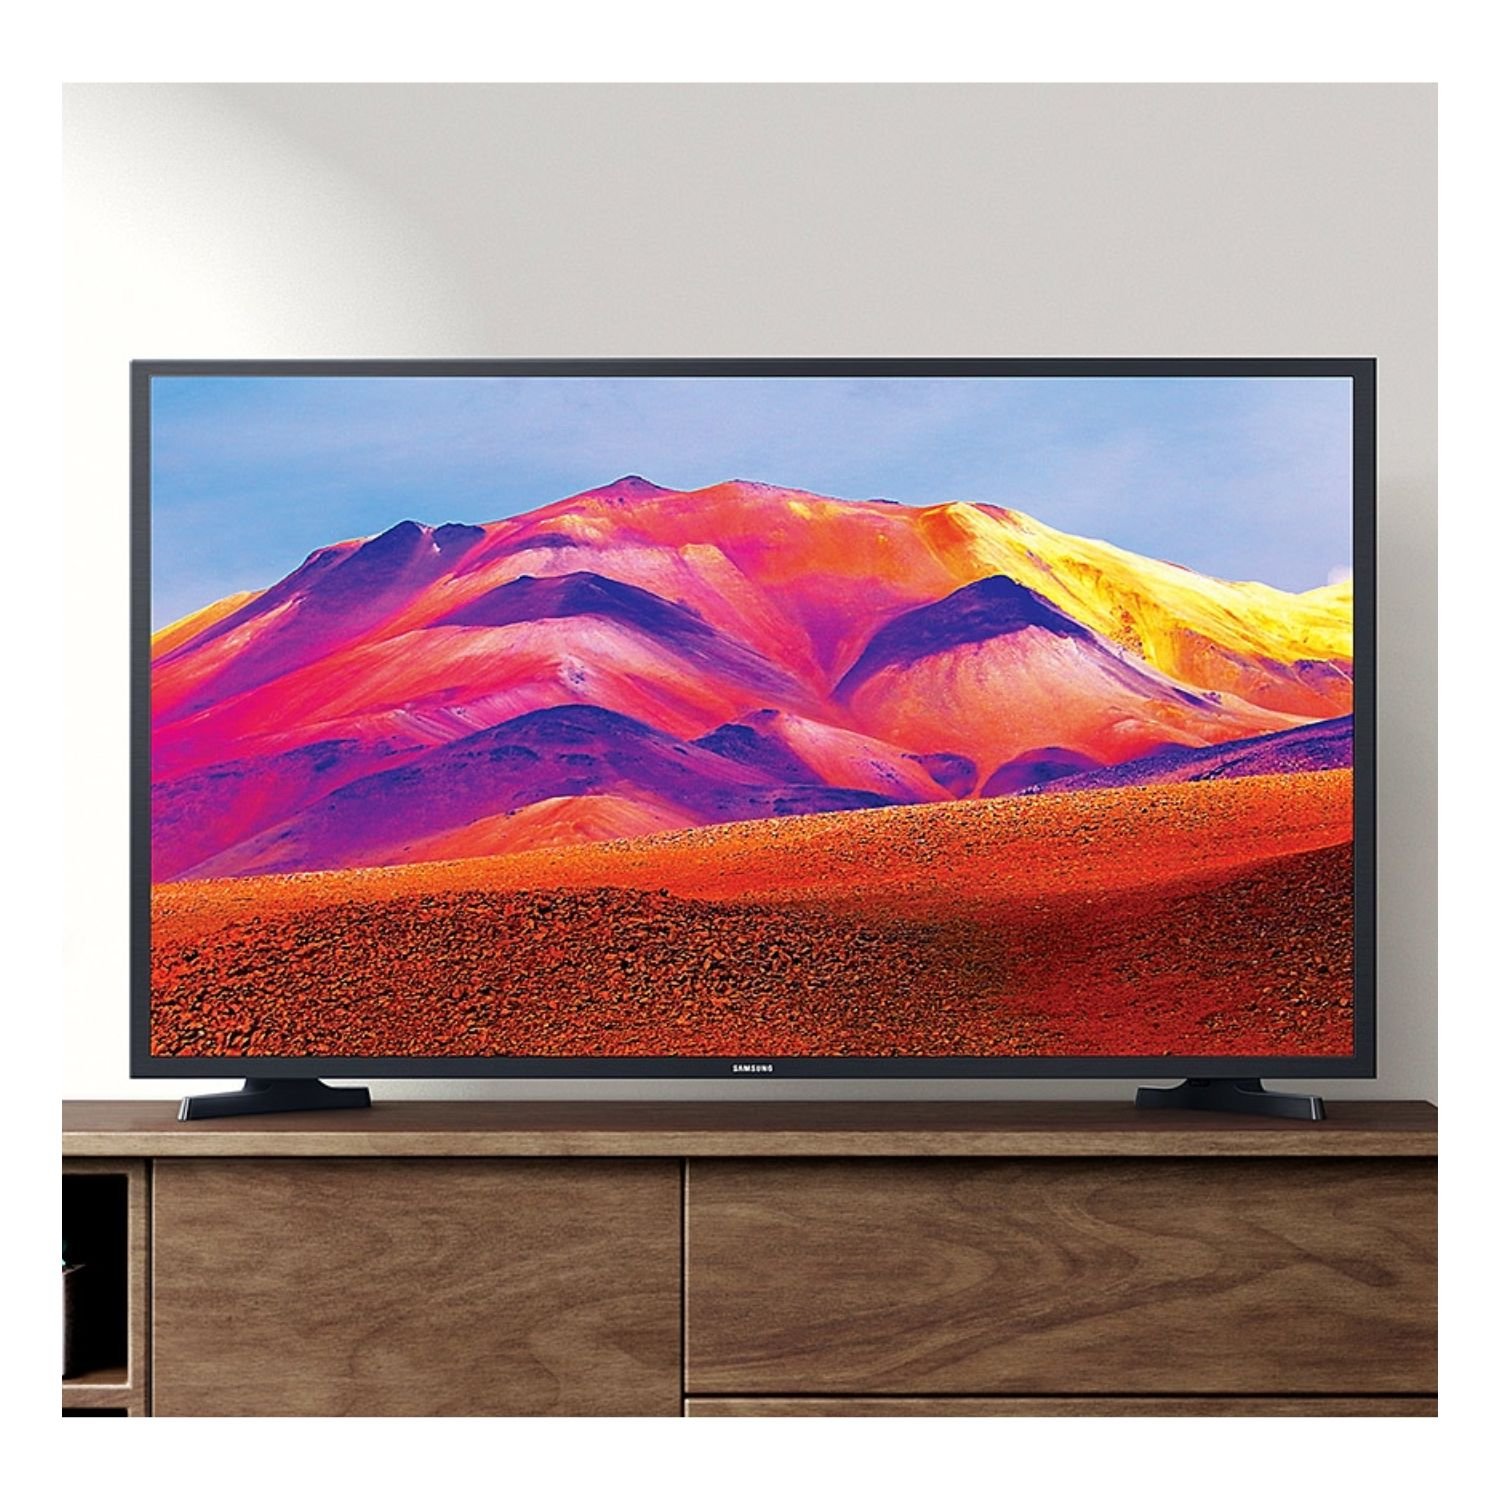 Samsung Smart TV 43 Pulgadas 4K UHD - Carga y Envío